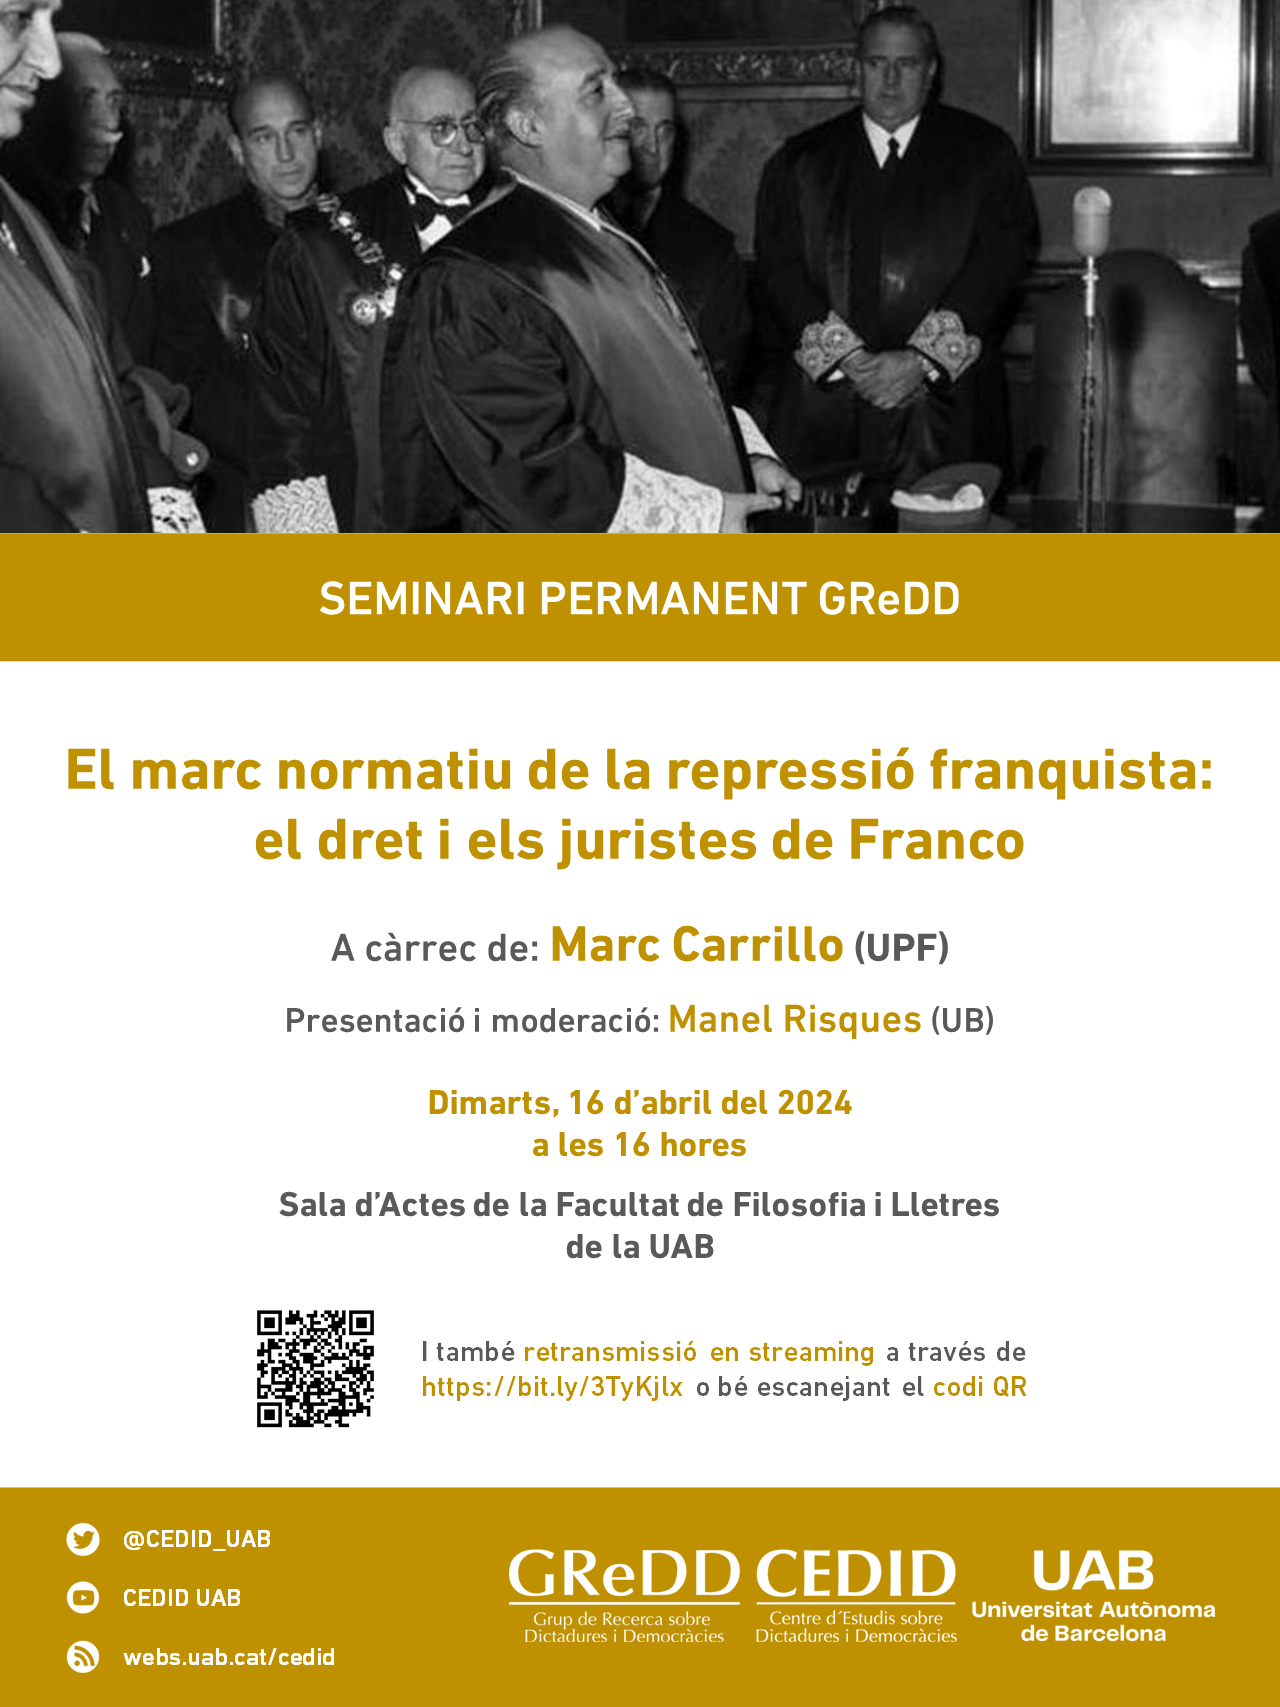 El marco normativo de la represión franquista: el derecho y los juristas de Franco